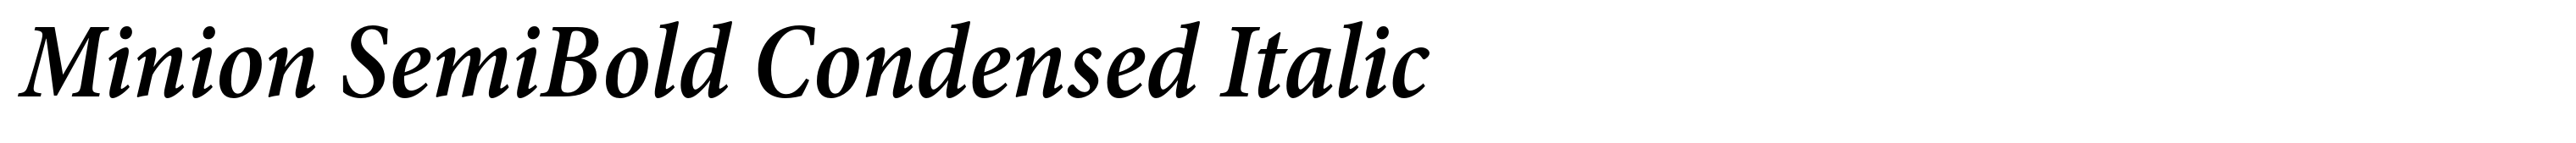 Minion SemiBold Condensed Italic